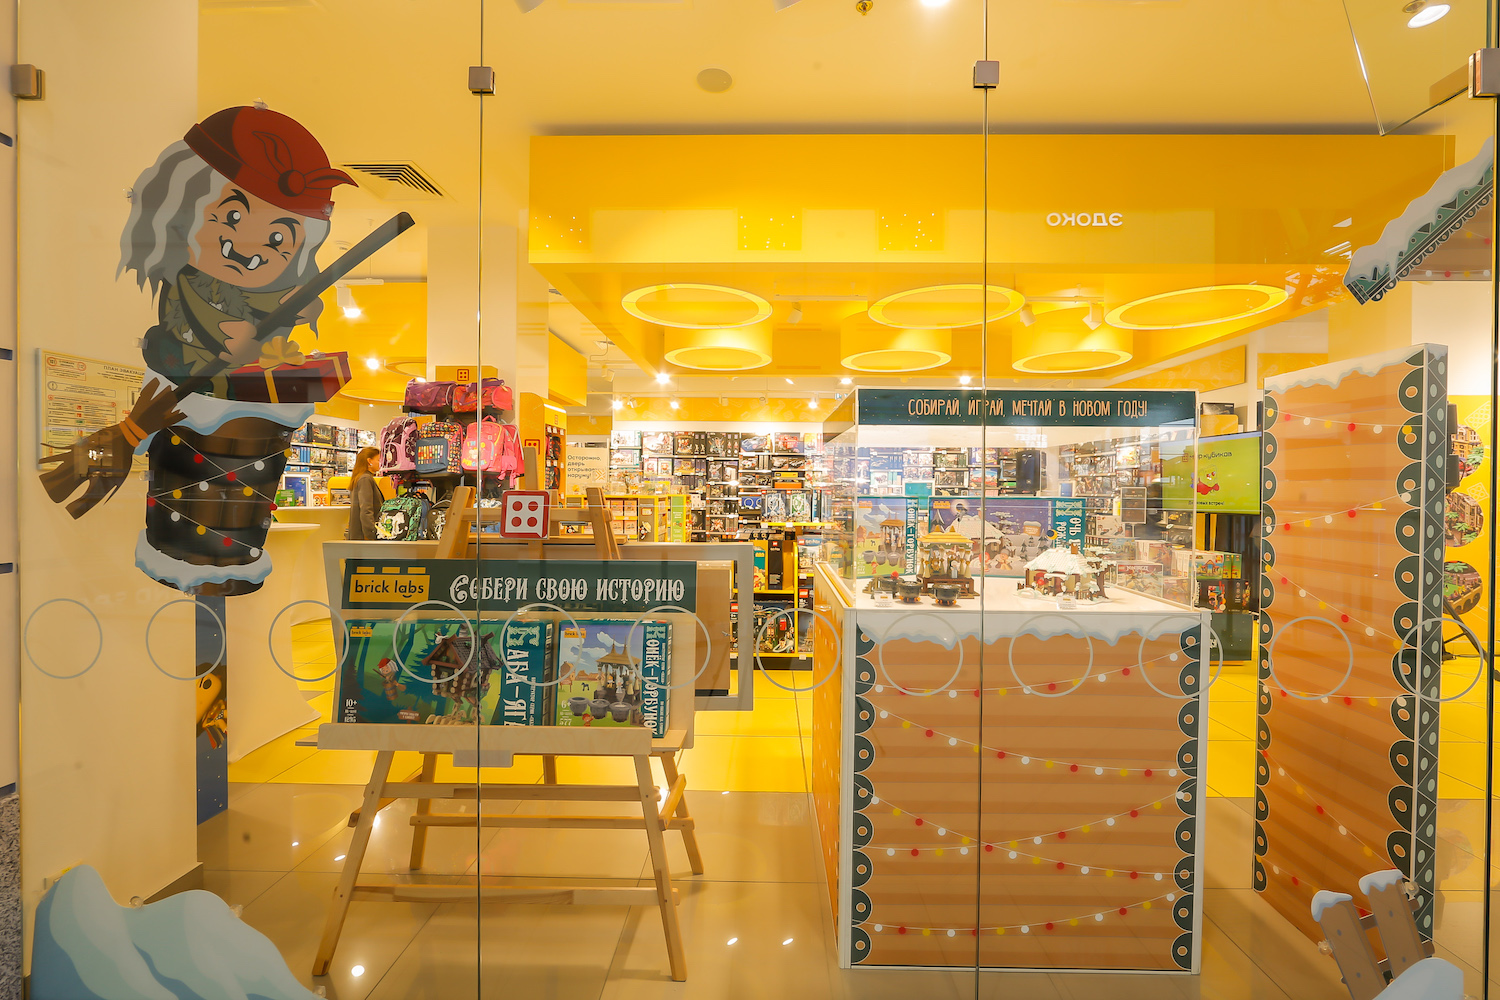 В ноябре дистрибьютор игрушек Inventive Toys выпустил серию конструкторов «Сказки» для детей и взрослых торговой марки Brick Labs